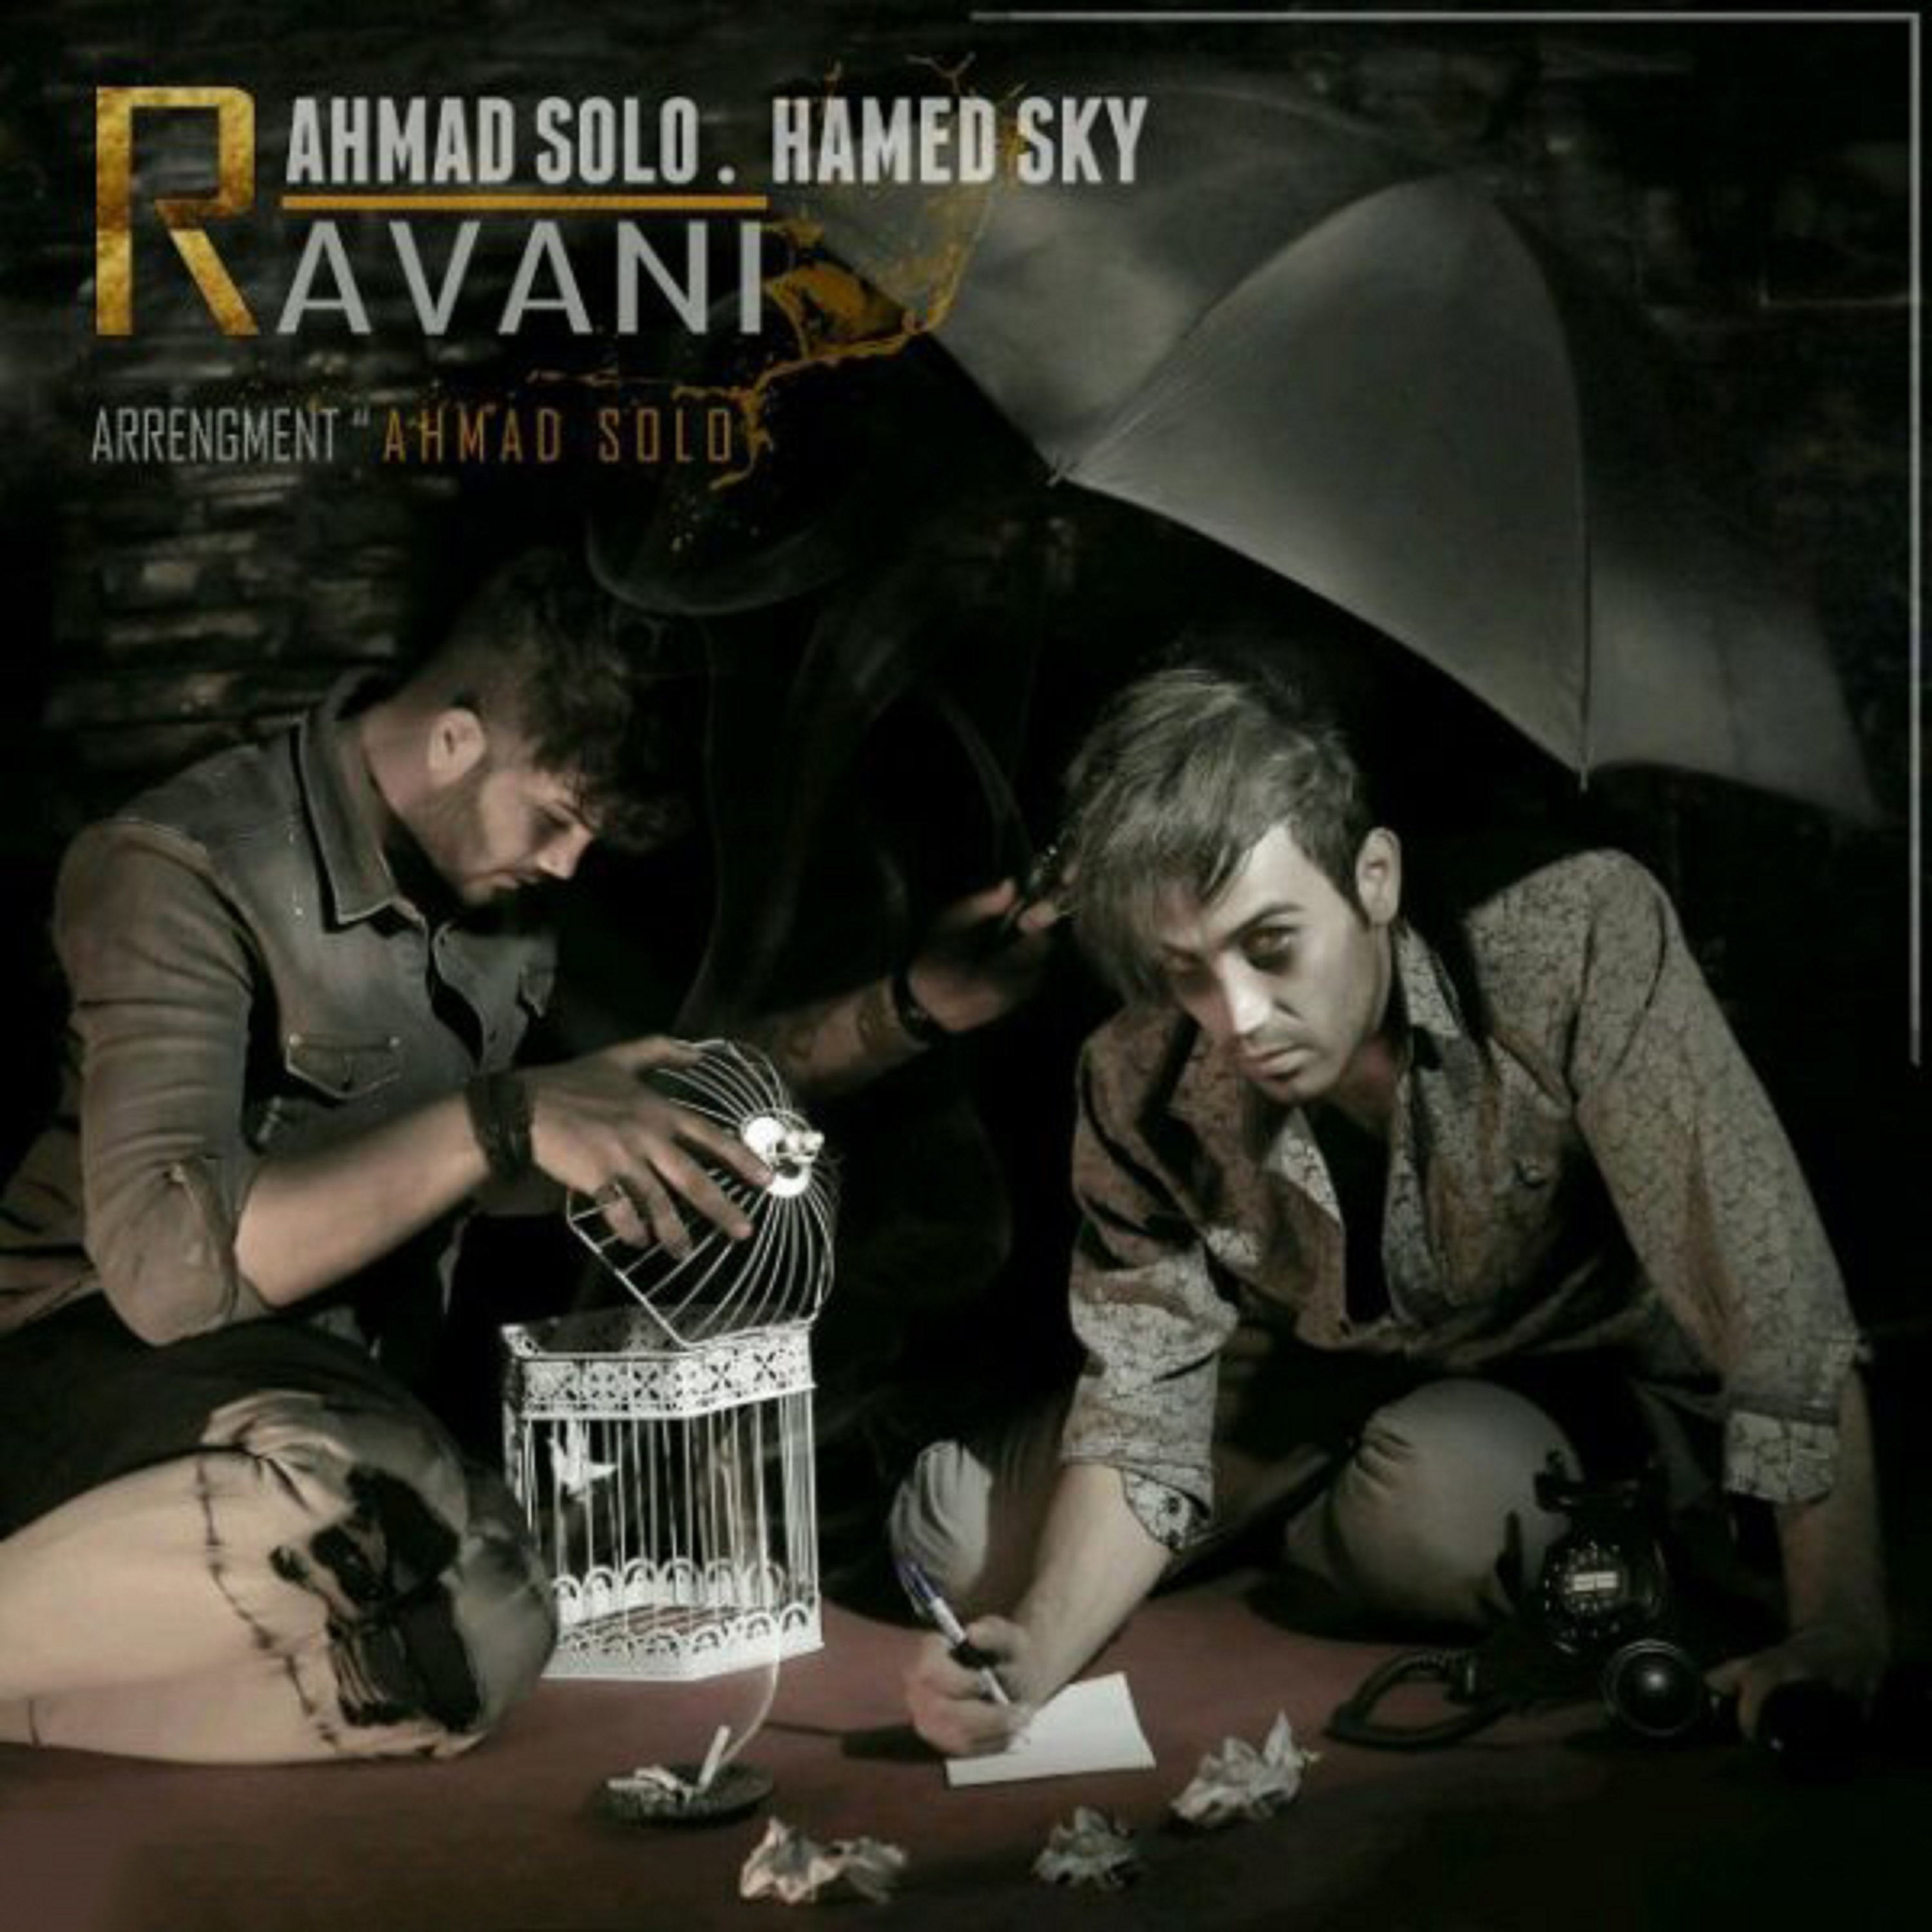  دانلود آهنگ جدید احمد سلو - روانی | Download New Music By Ahmad Solo - Ravani